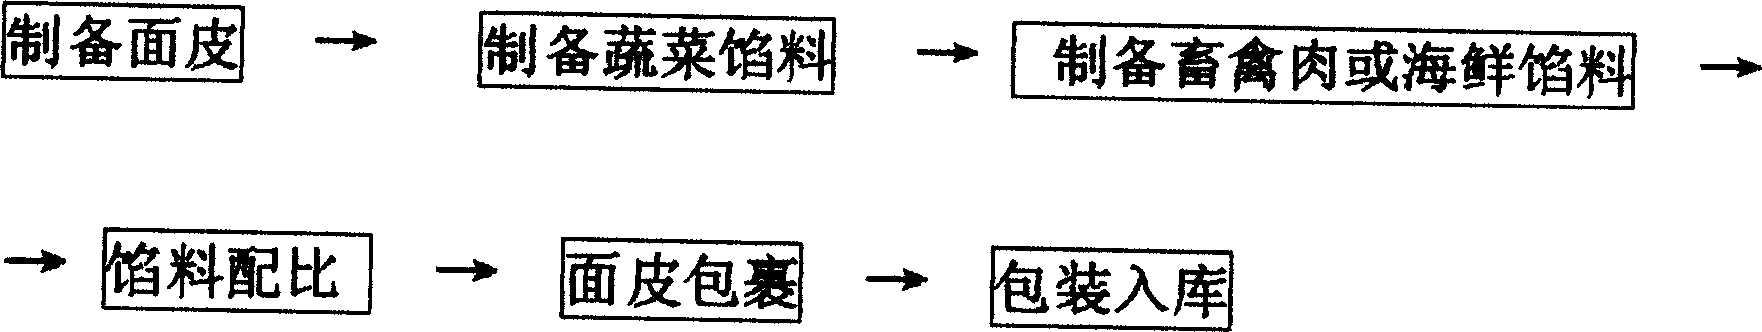 Method for producing jinzhuwucai cake